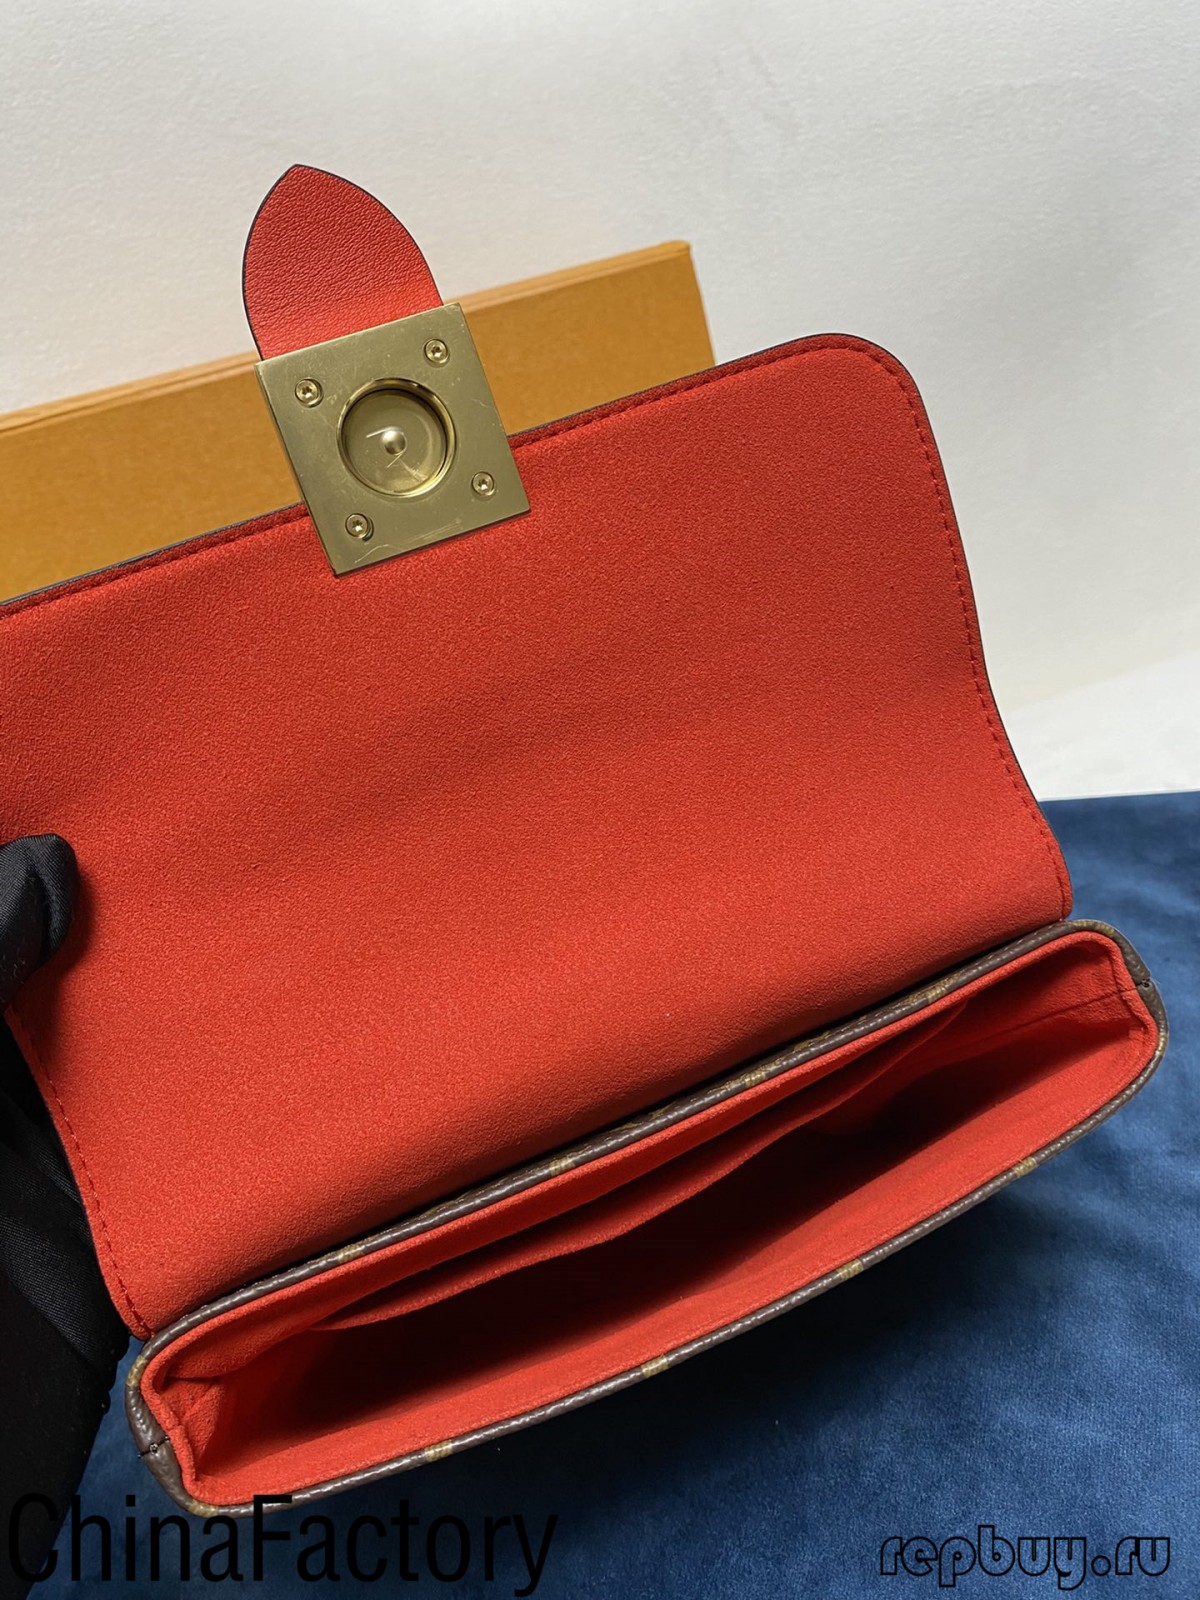 Ena aaa replica matumba ndemanga kugawana (2022 nkhani yatsopano)-Best Quality fake Louis Vuitton Bag Online Store, Replica designer bag ru